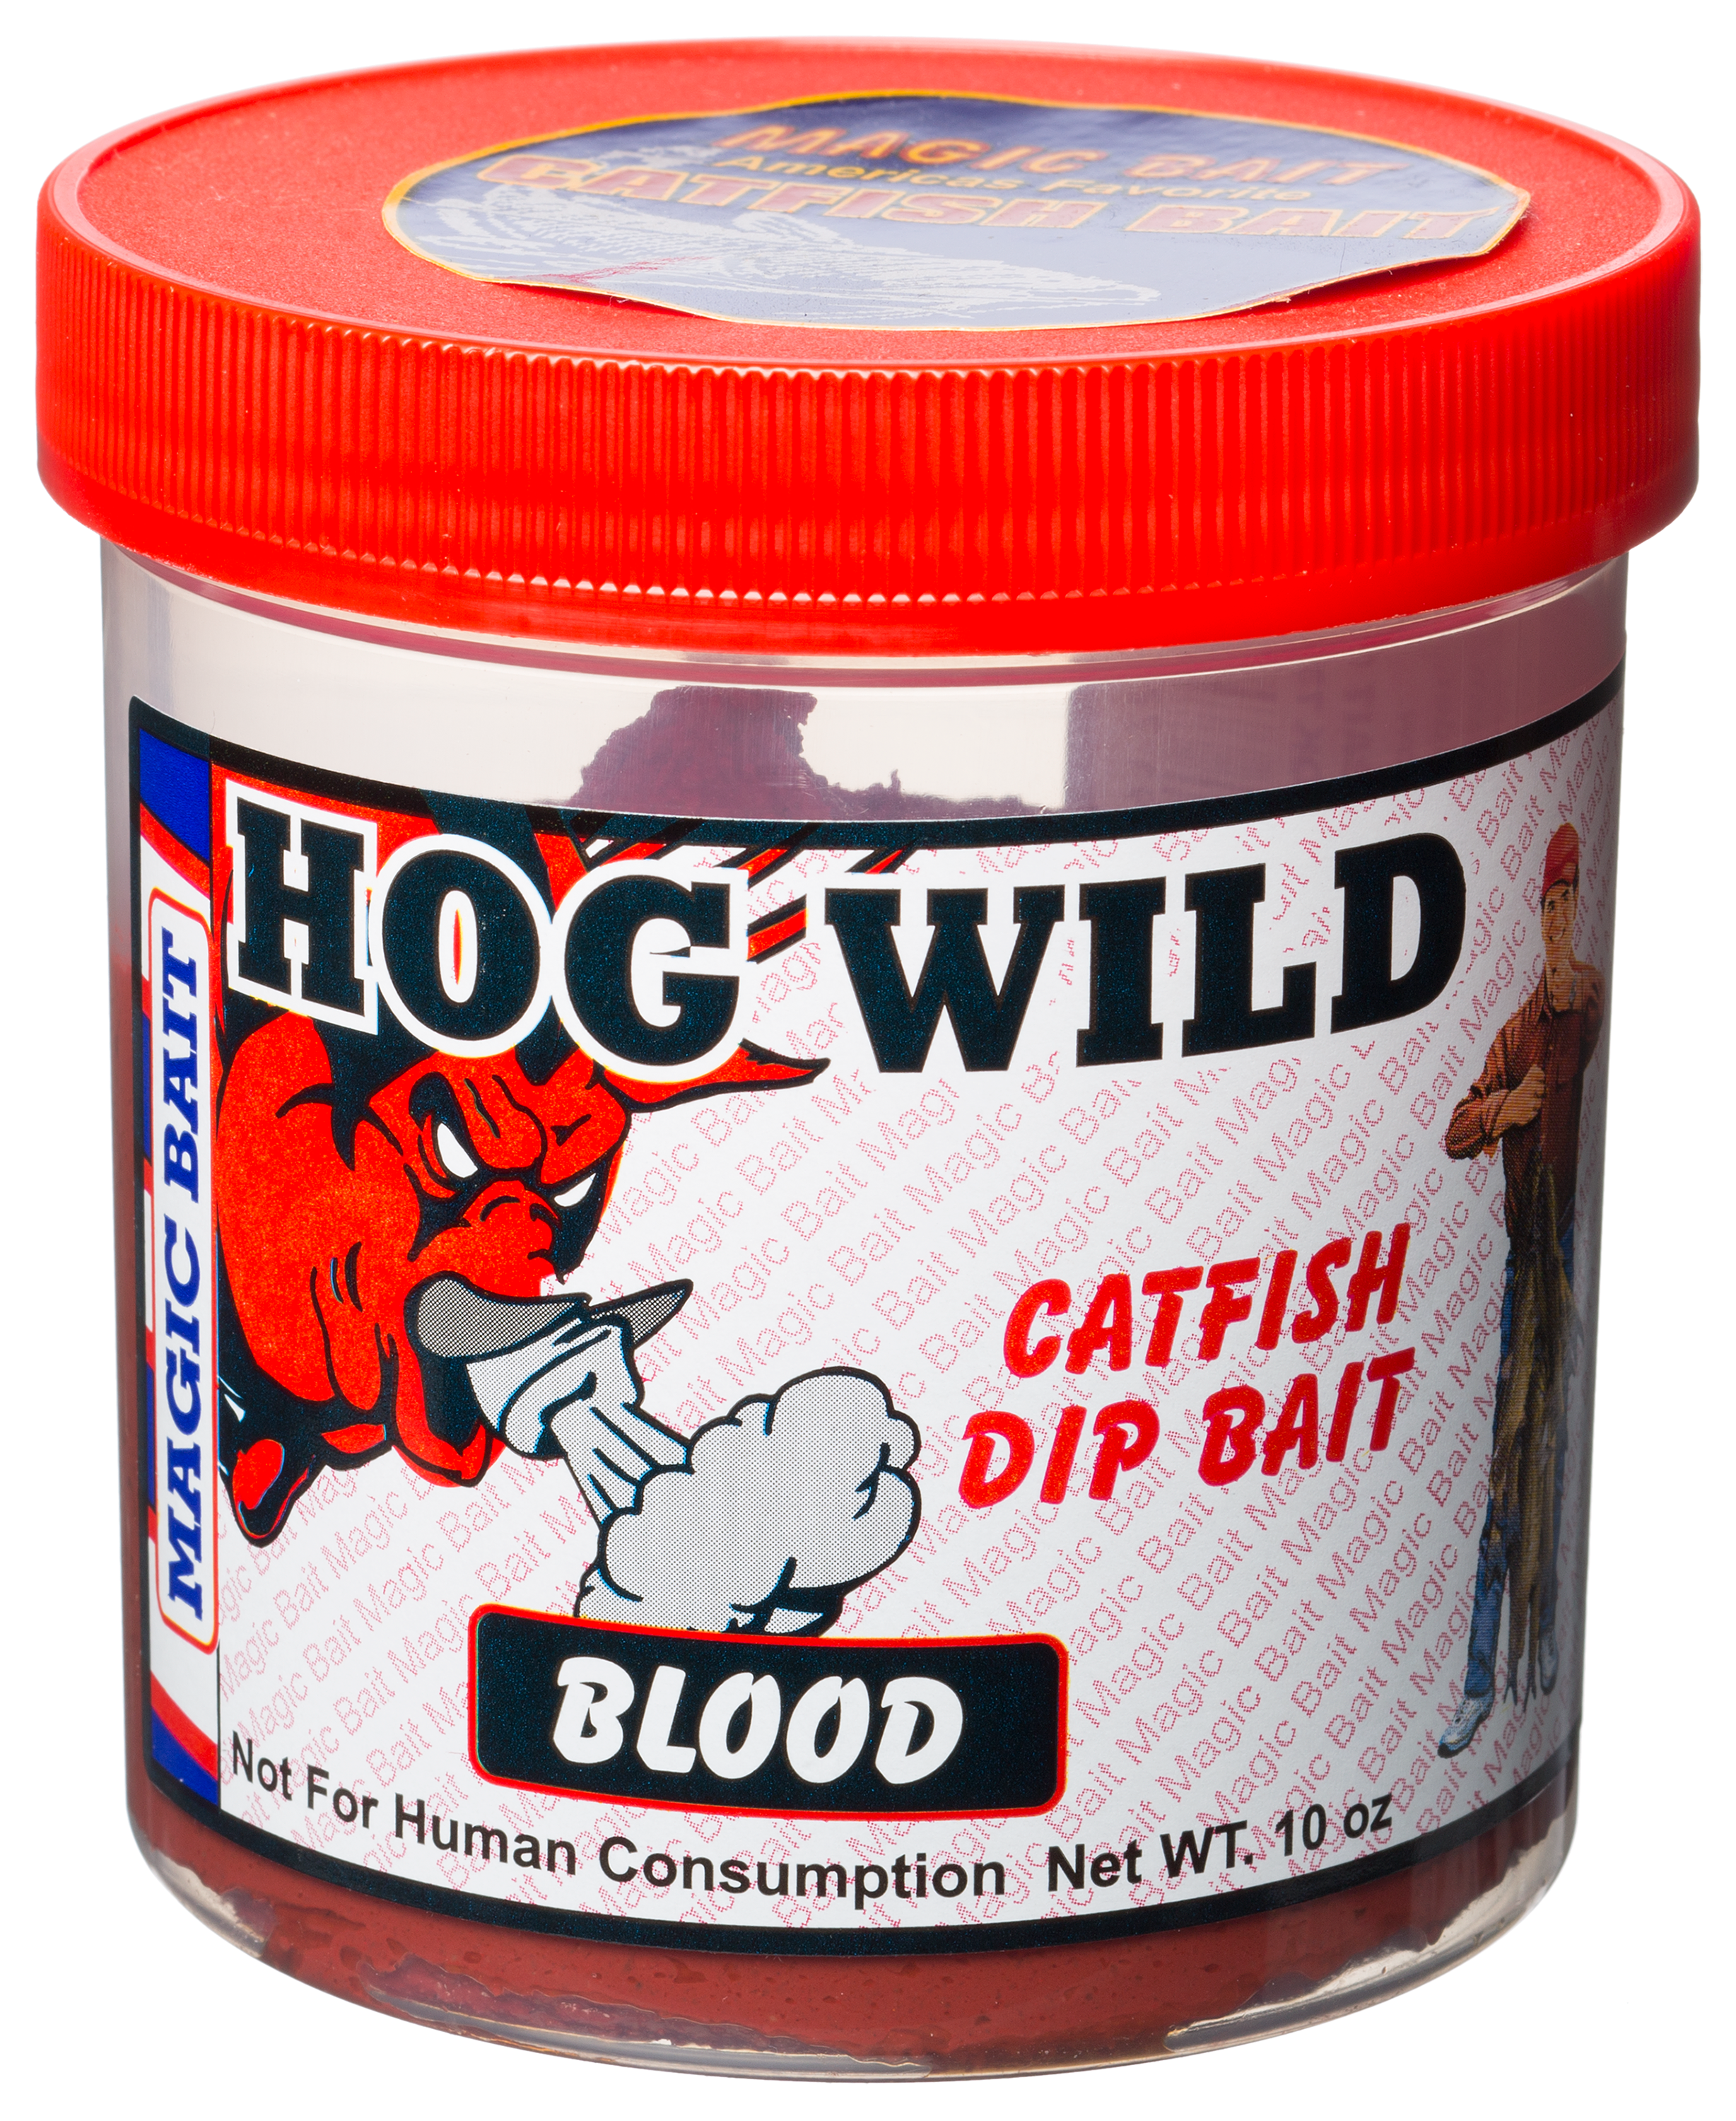 Magic Bait Dip Bait Hog Wild Original